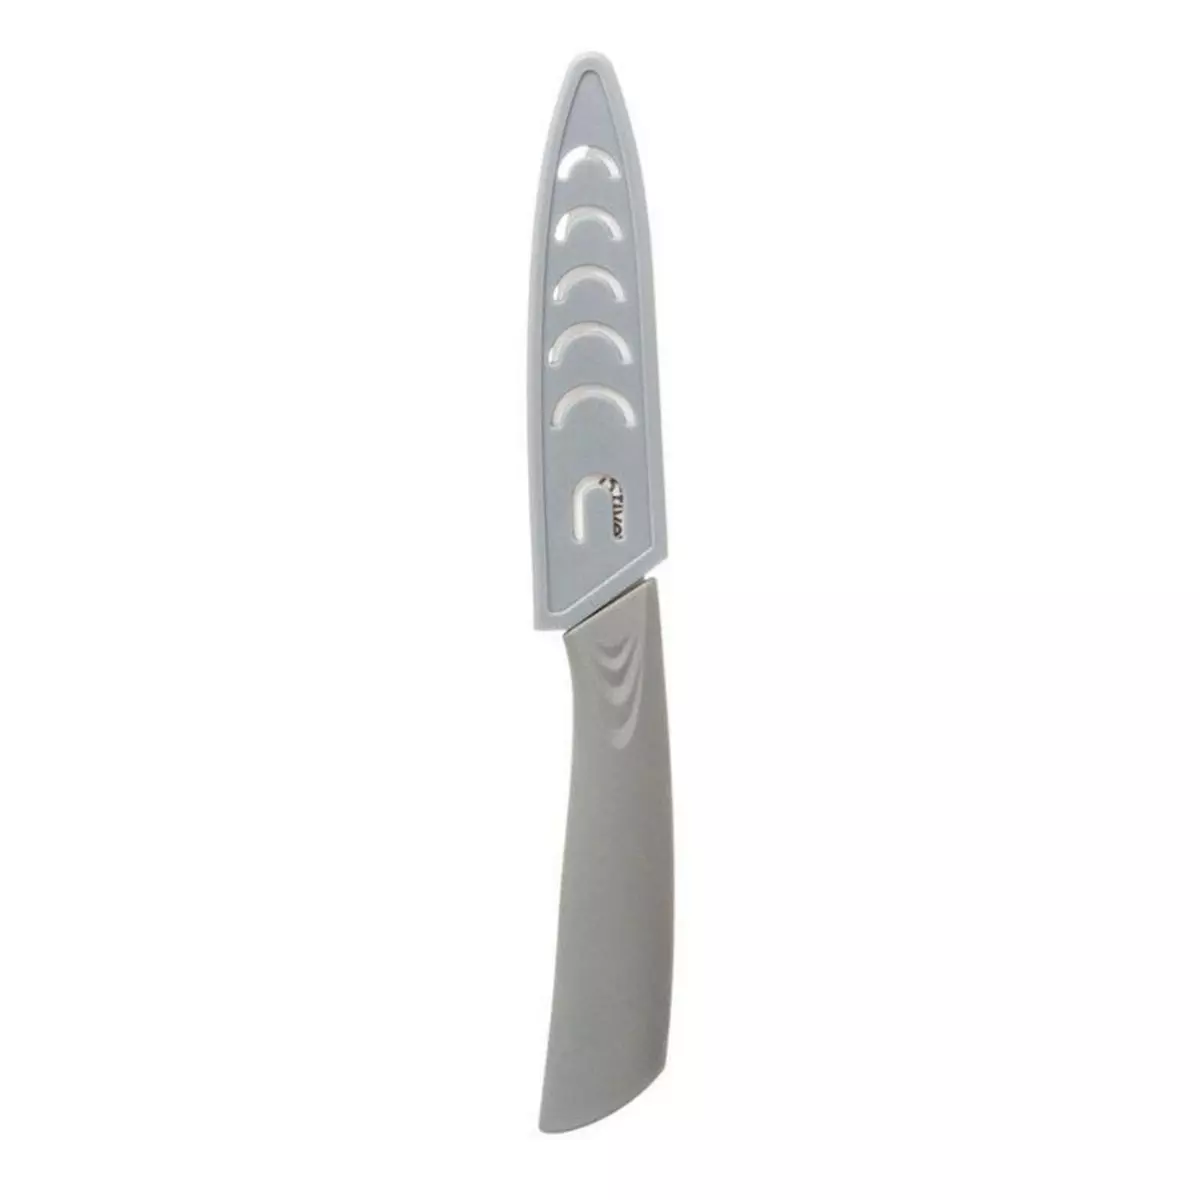  Couteau en Céramique  Zirco  20cm Gris & Blanc